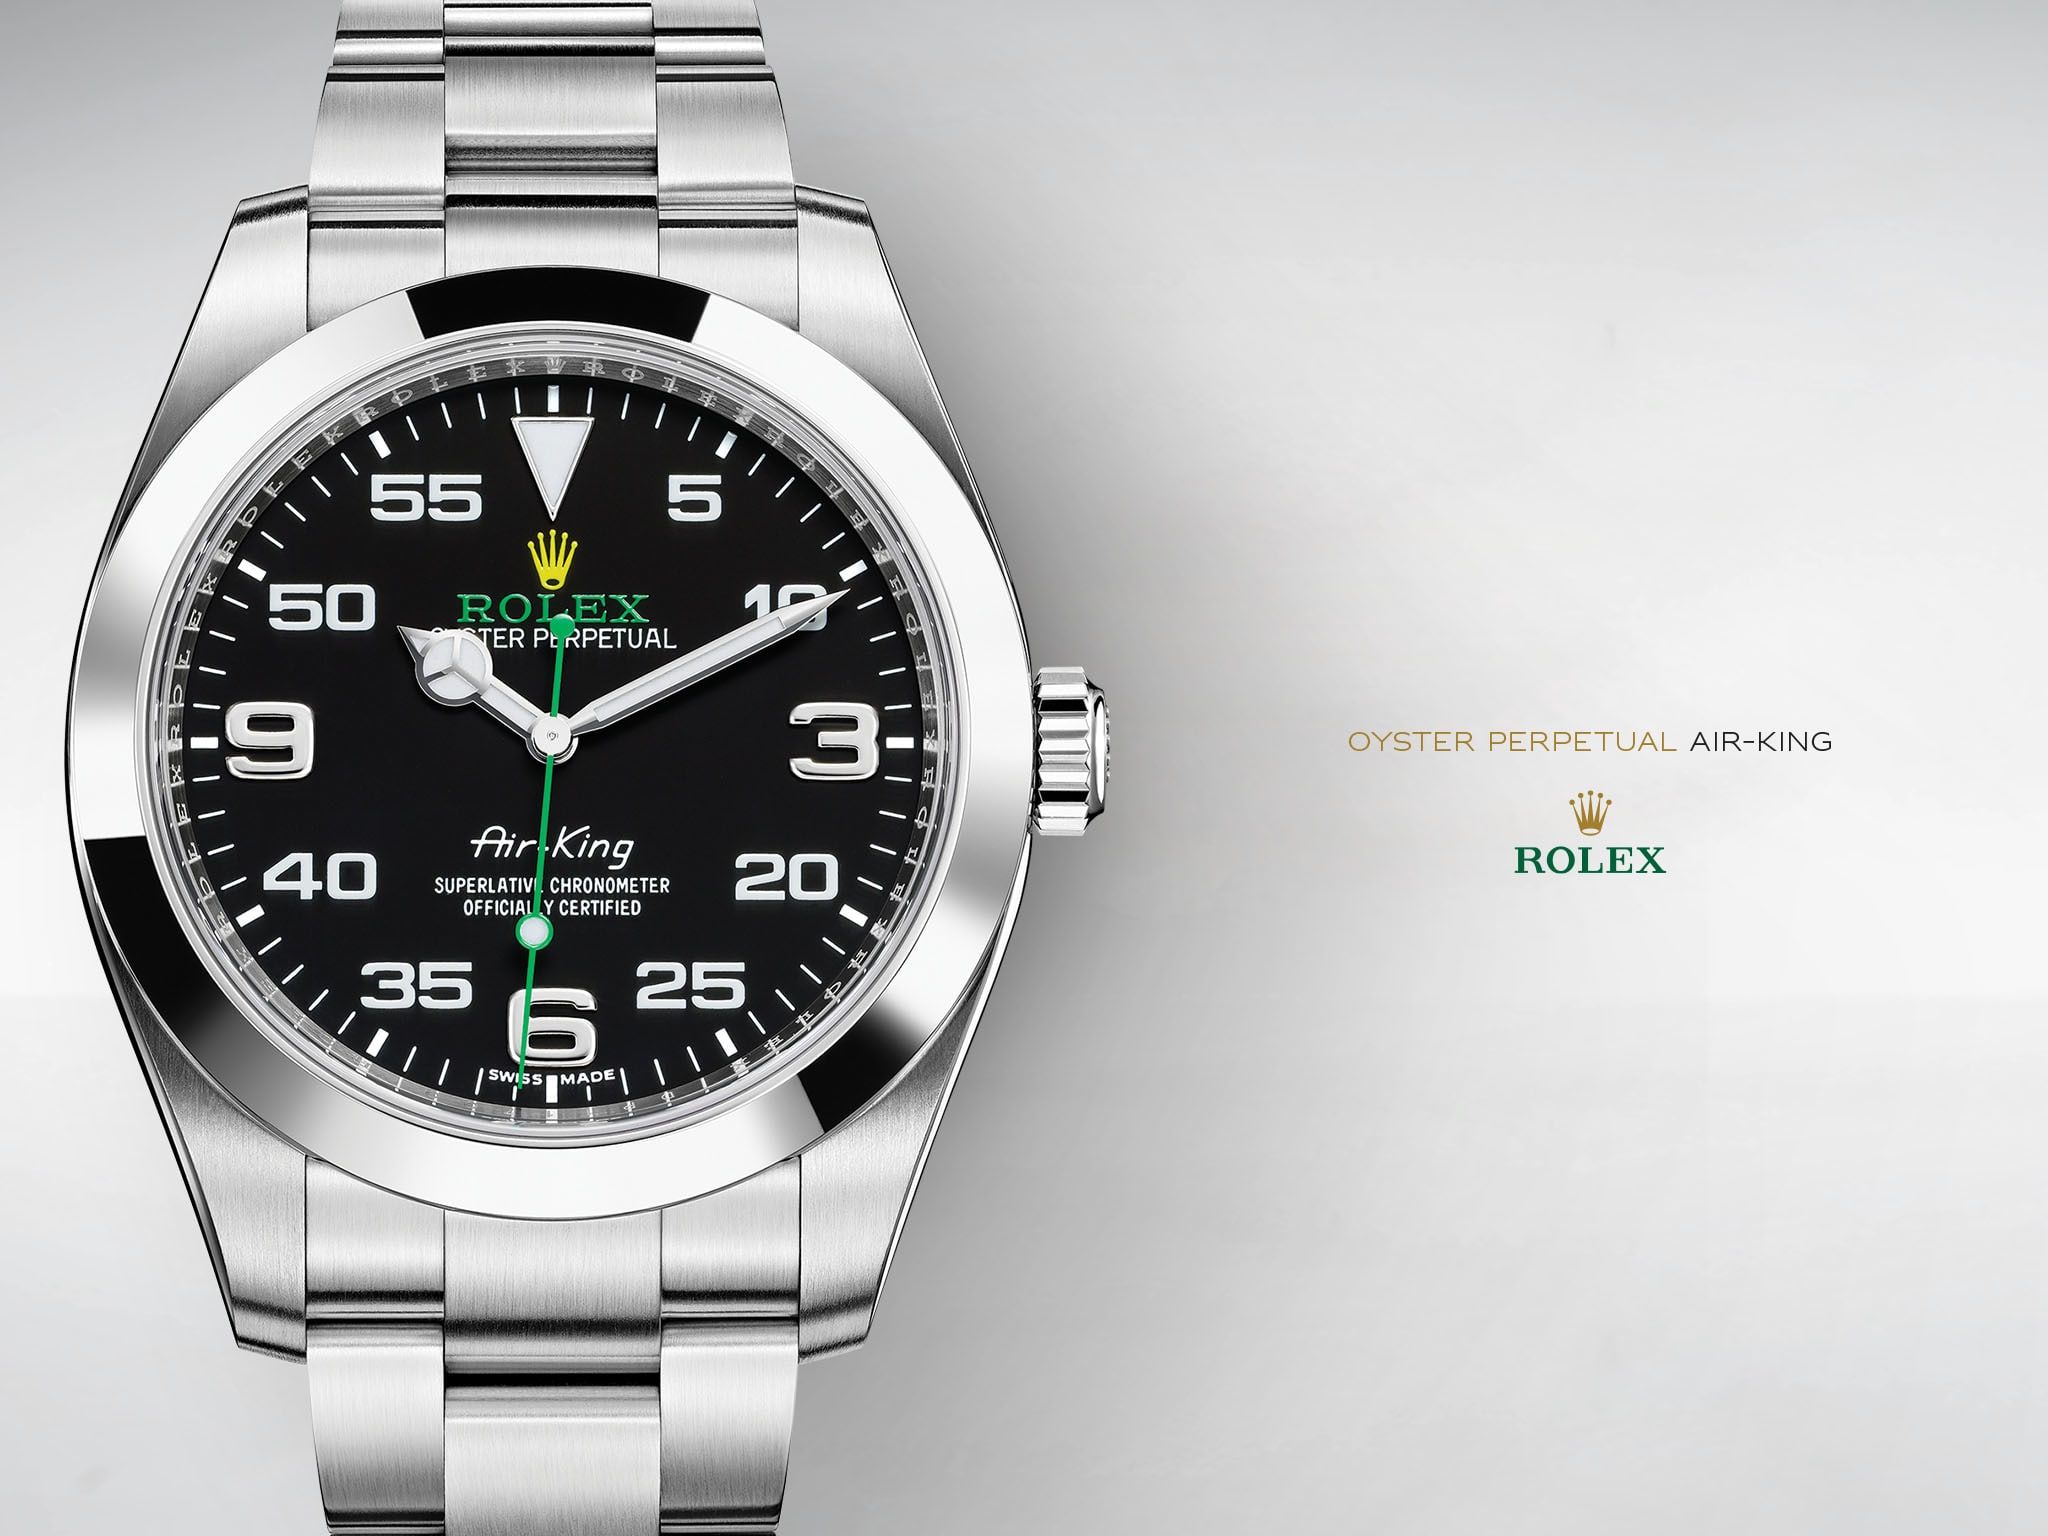 تصویر ساعت فوق العاده پرطرفدار رولکس مدل ایر کینگ‌ برای پیج فروش ساعت